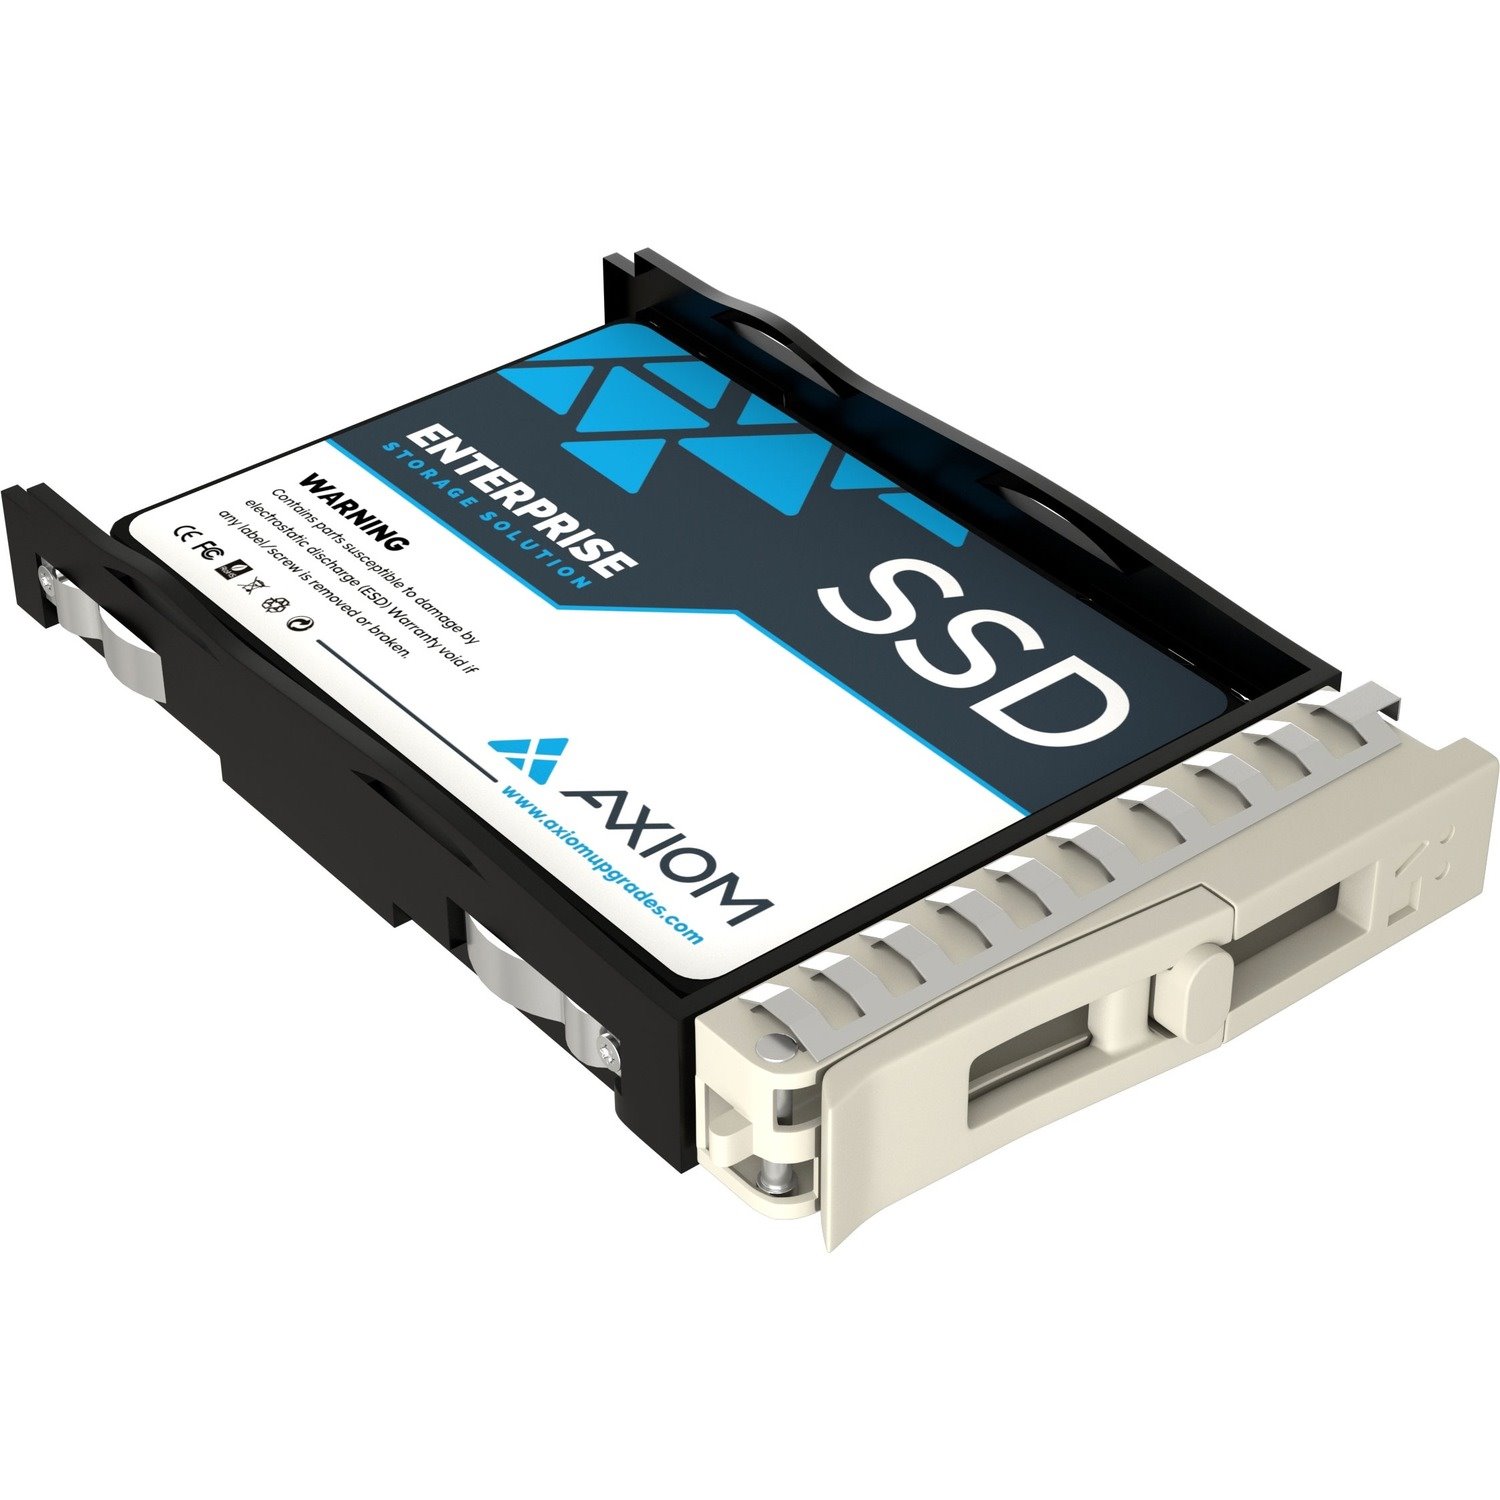 Axiom EP450 7.68 TB Solid State Drive - 2.5" Internal - SAS (12Gb/s SAS)